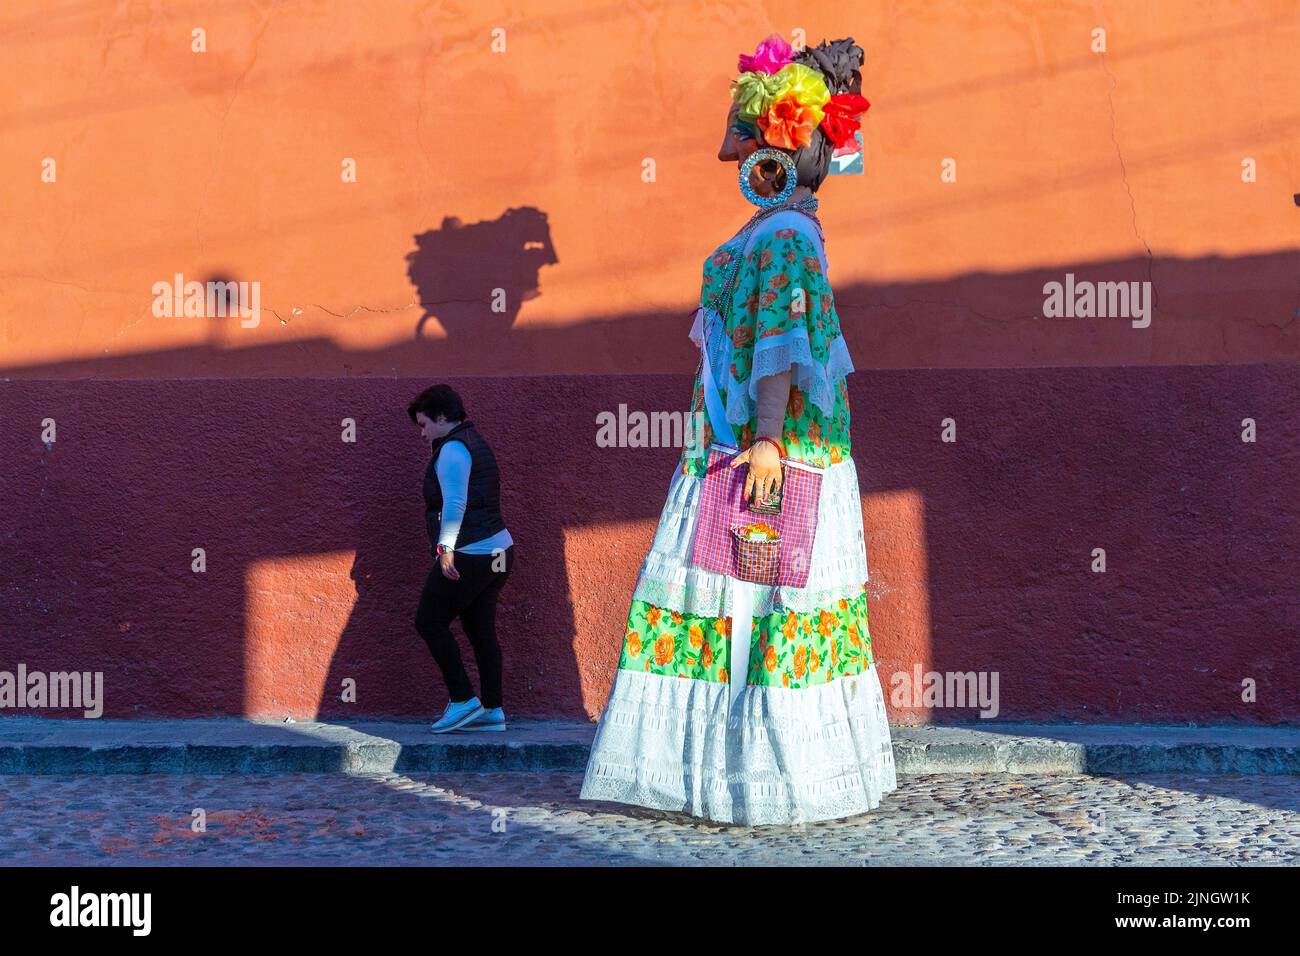 Une femme passe devant un mojiganga, ou marionnette géante en papier mâché lorsqu'elle marche dans le centre historique de San Miguel de Allende, au Mexique. Banque D'Images